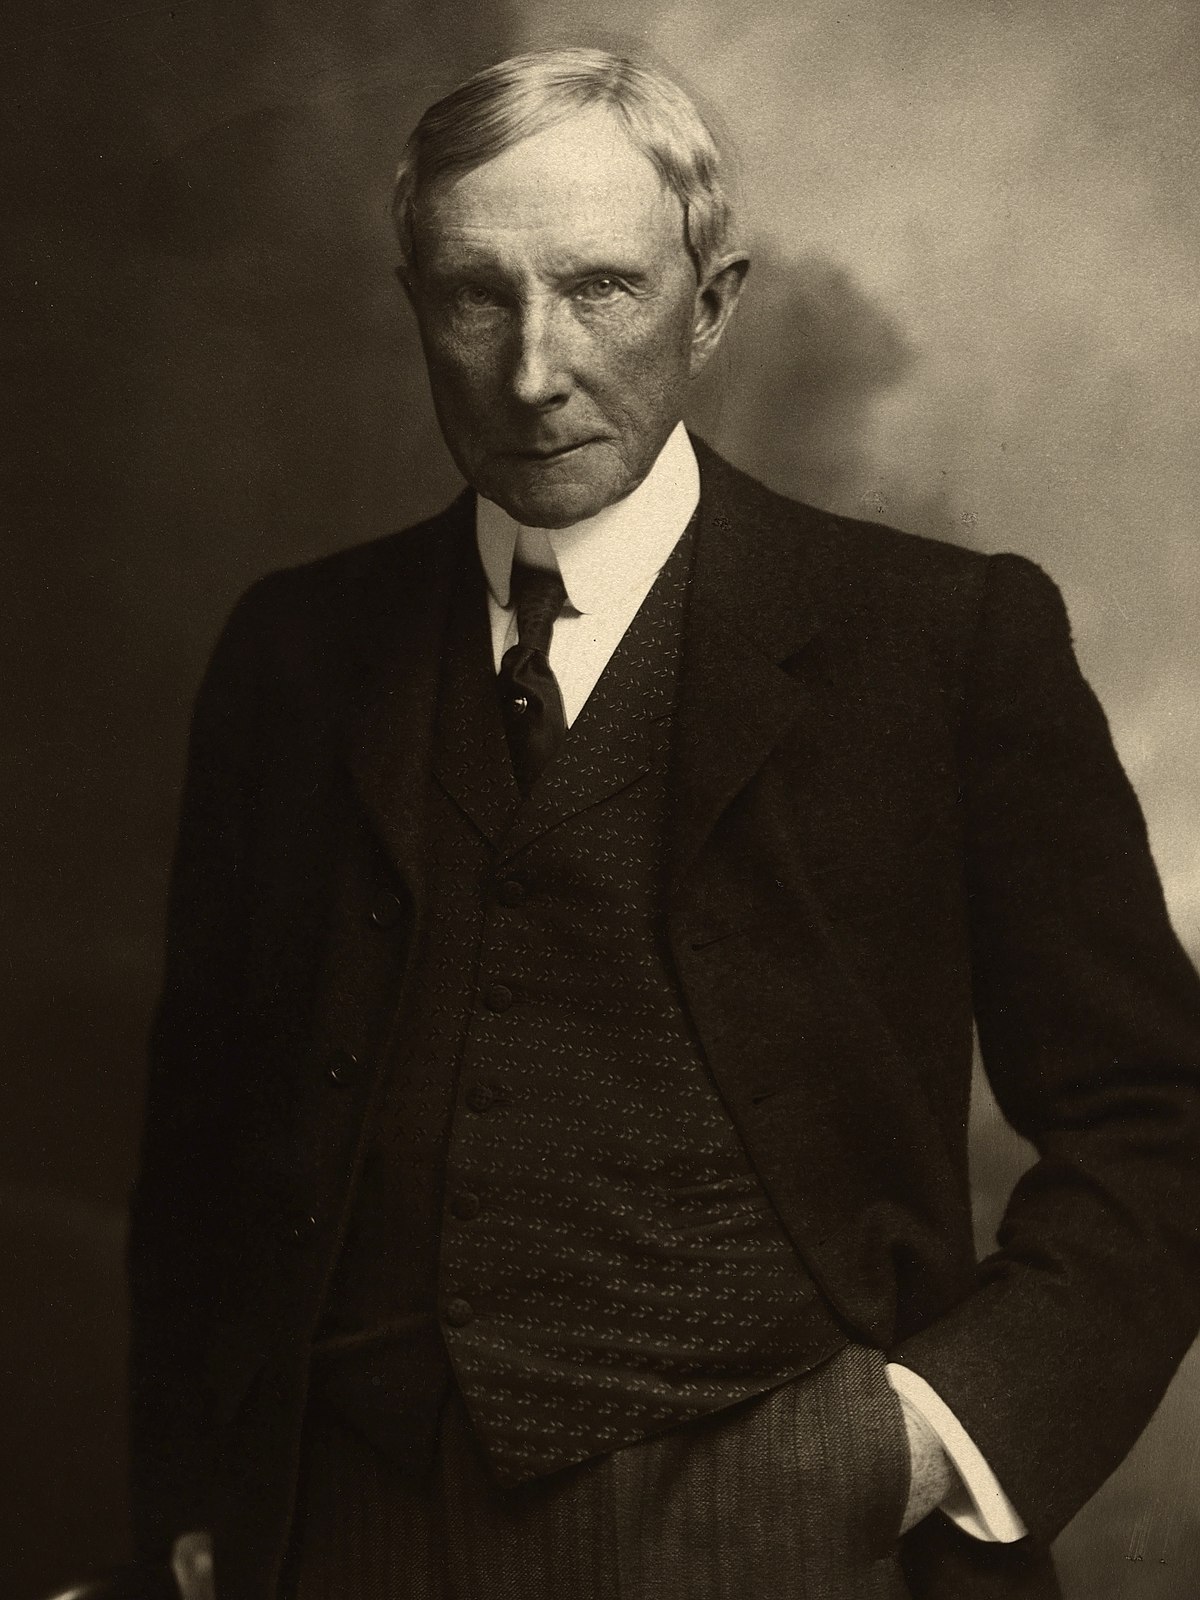 Los diez mandamientos de John D. Rockefeller para tener éxito en los  negocios